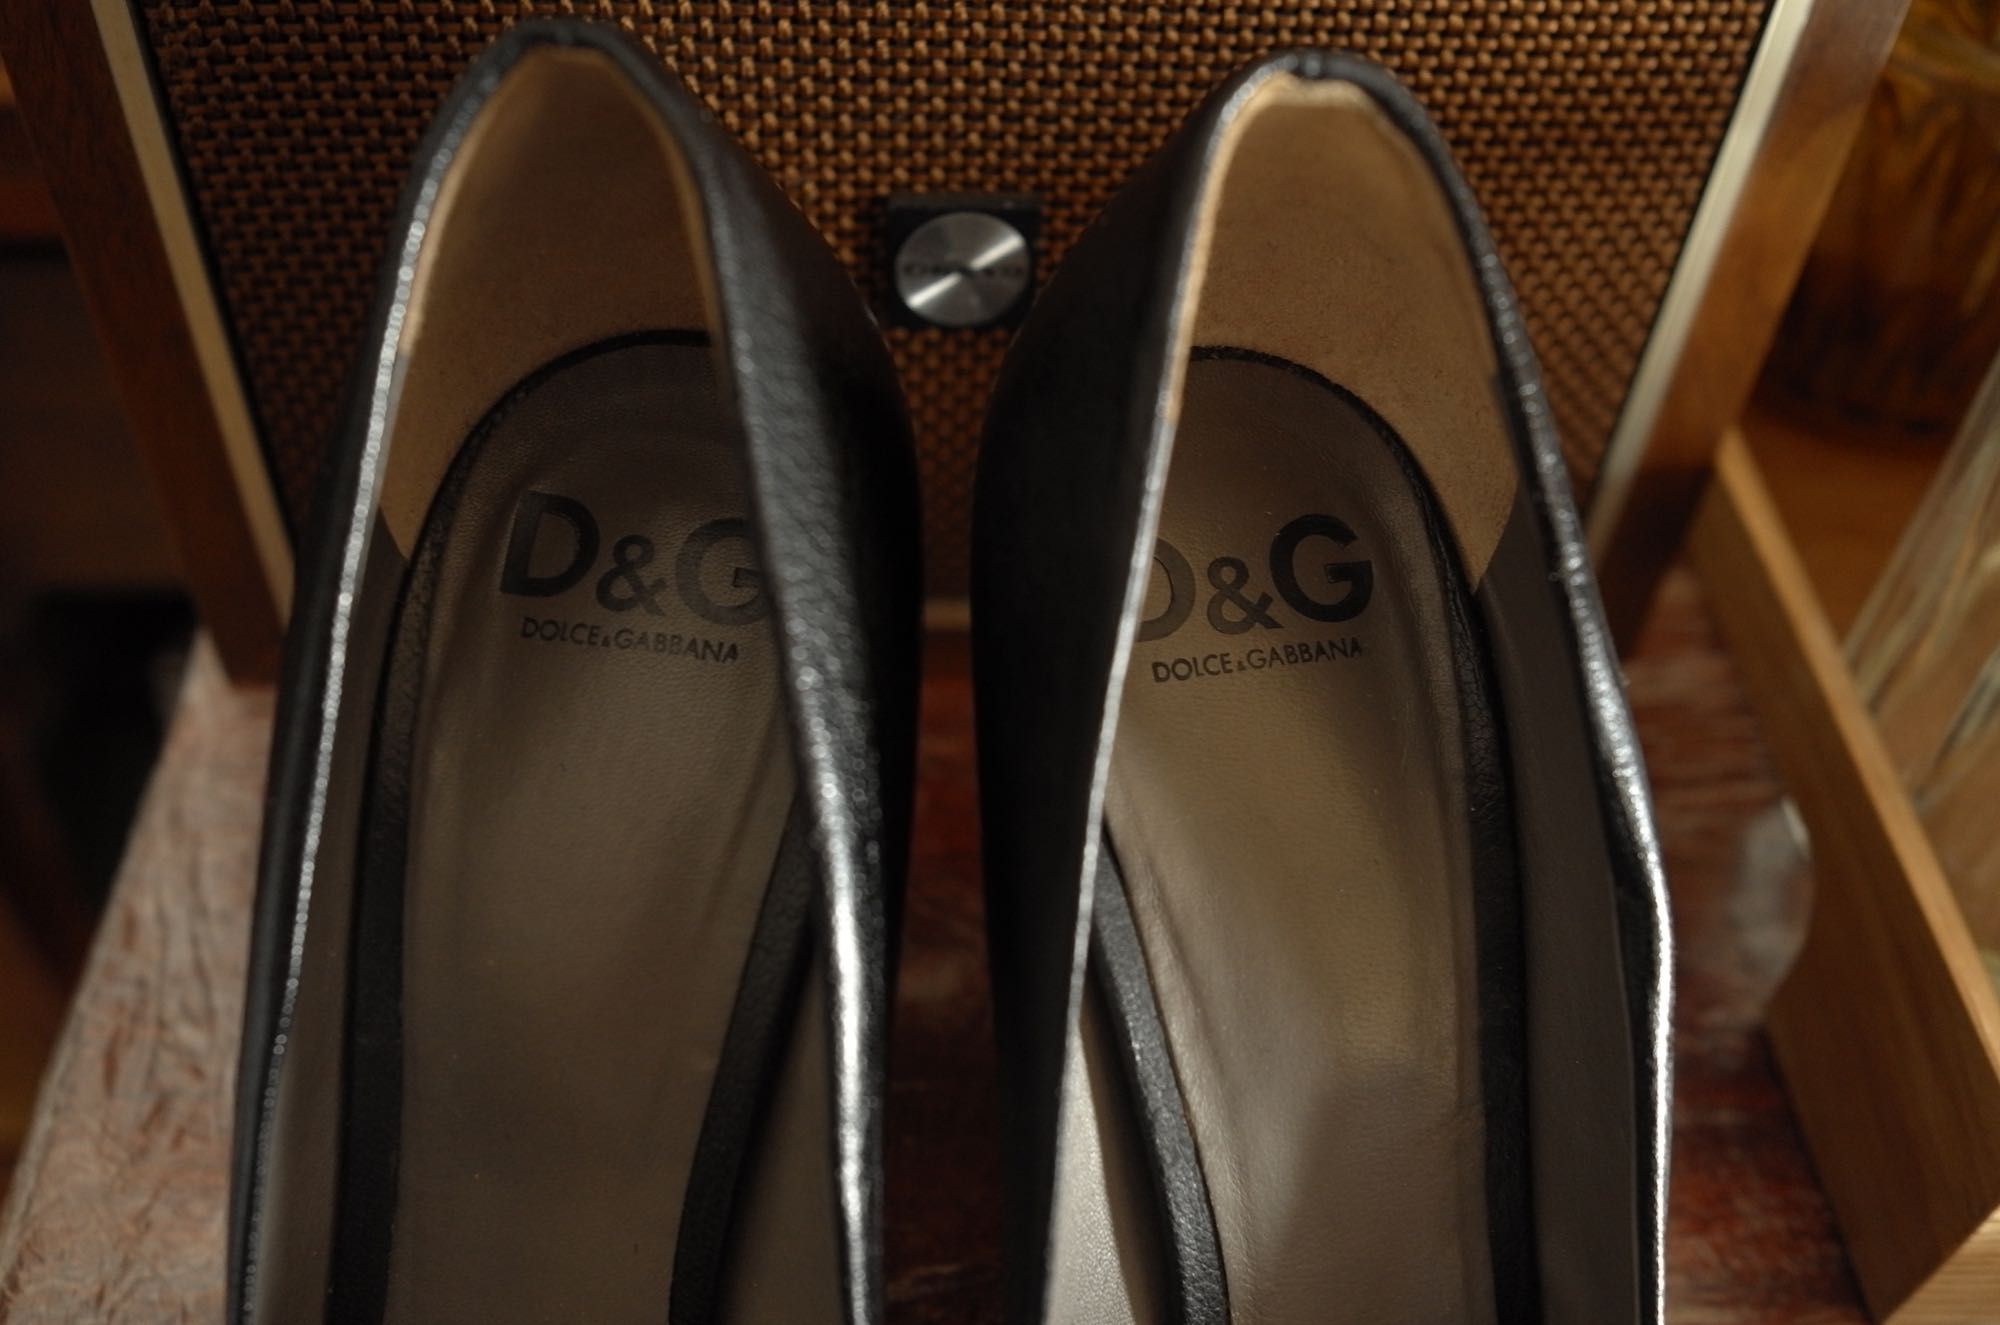 D&G - Sapatos de salto alto Dolce & Gabbana